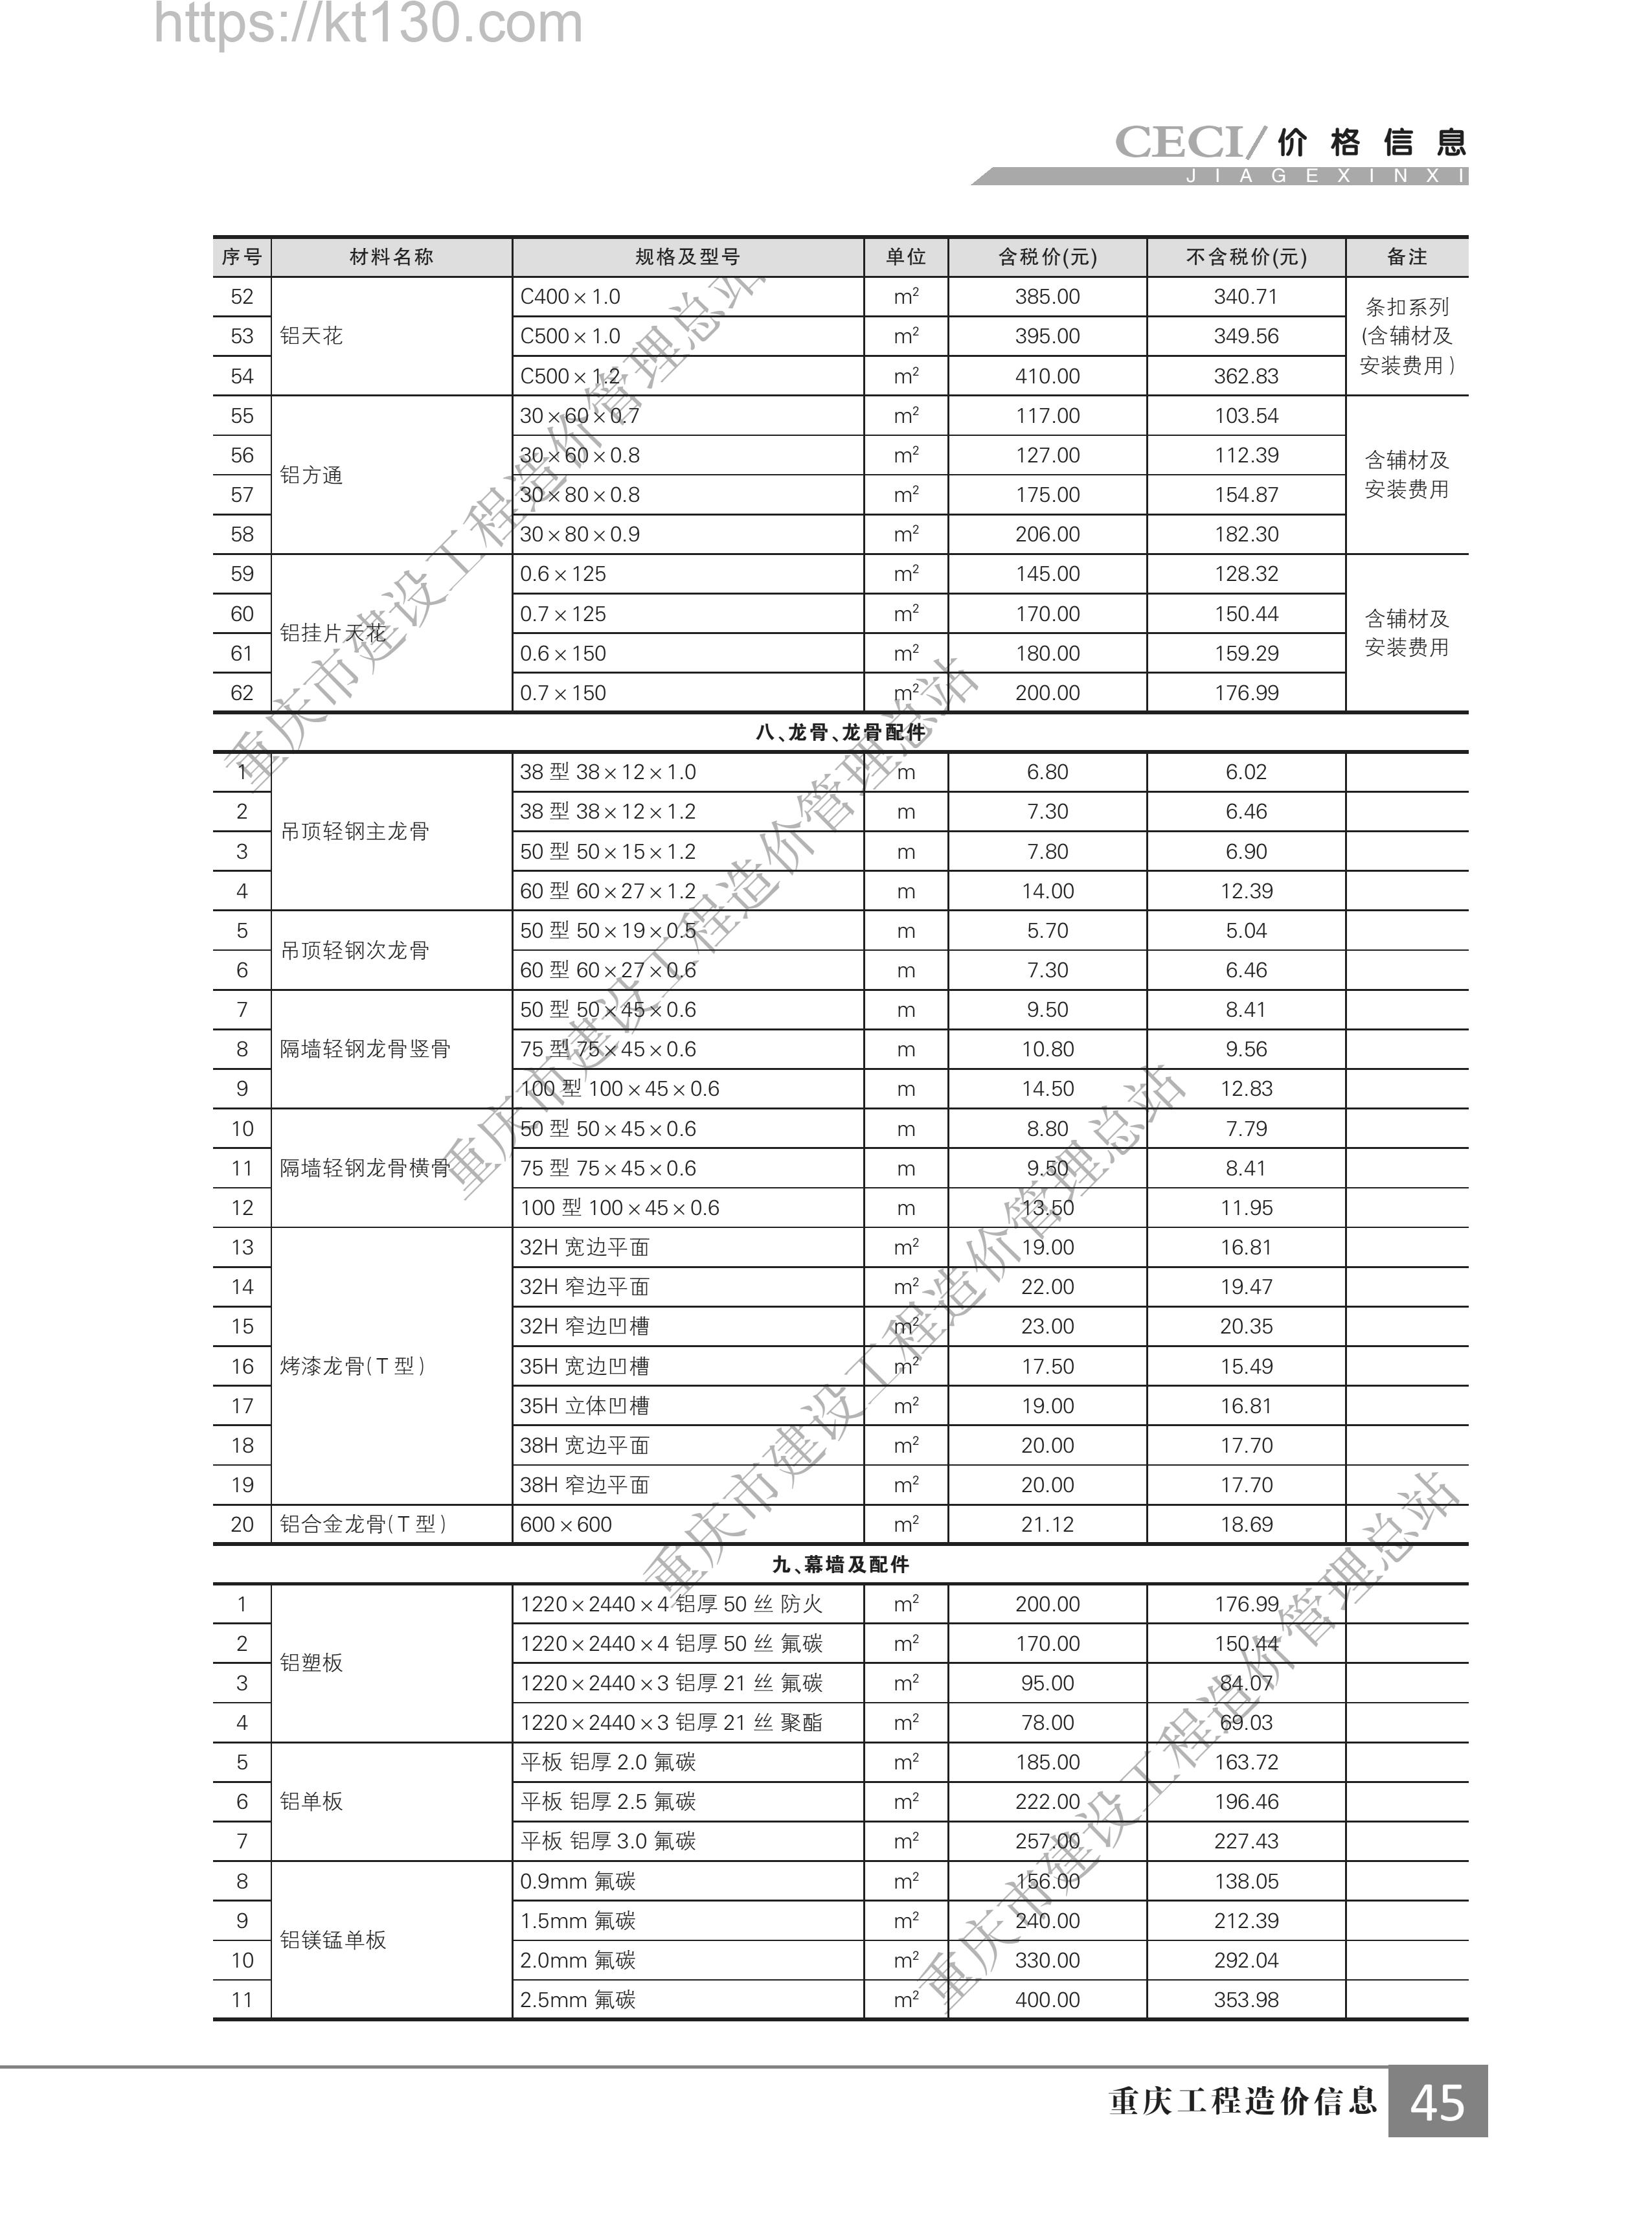 重庆市2022年第二期建筑材料价_龙骨及配件